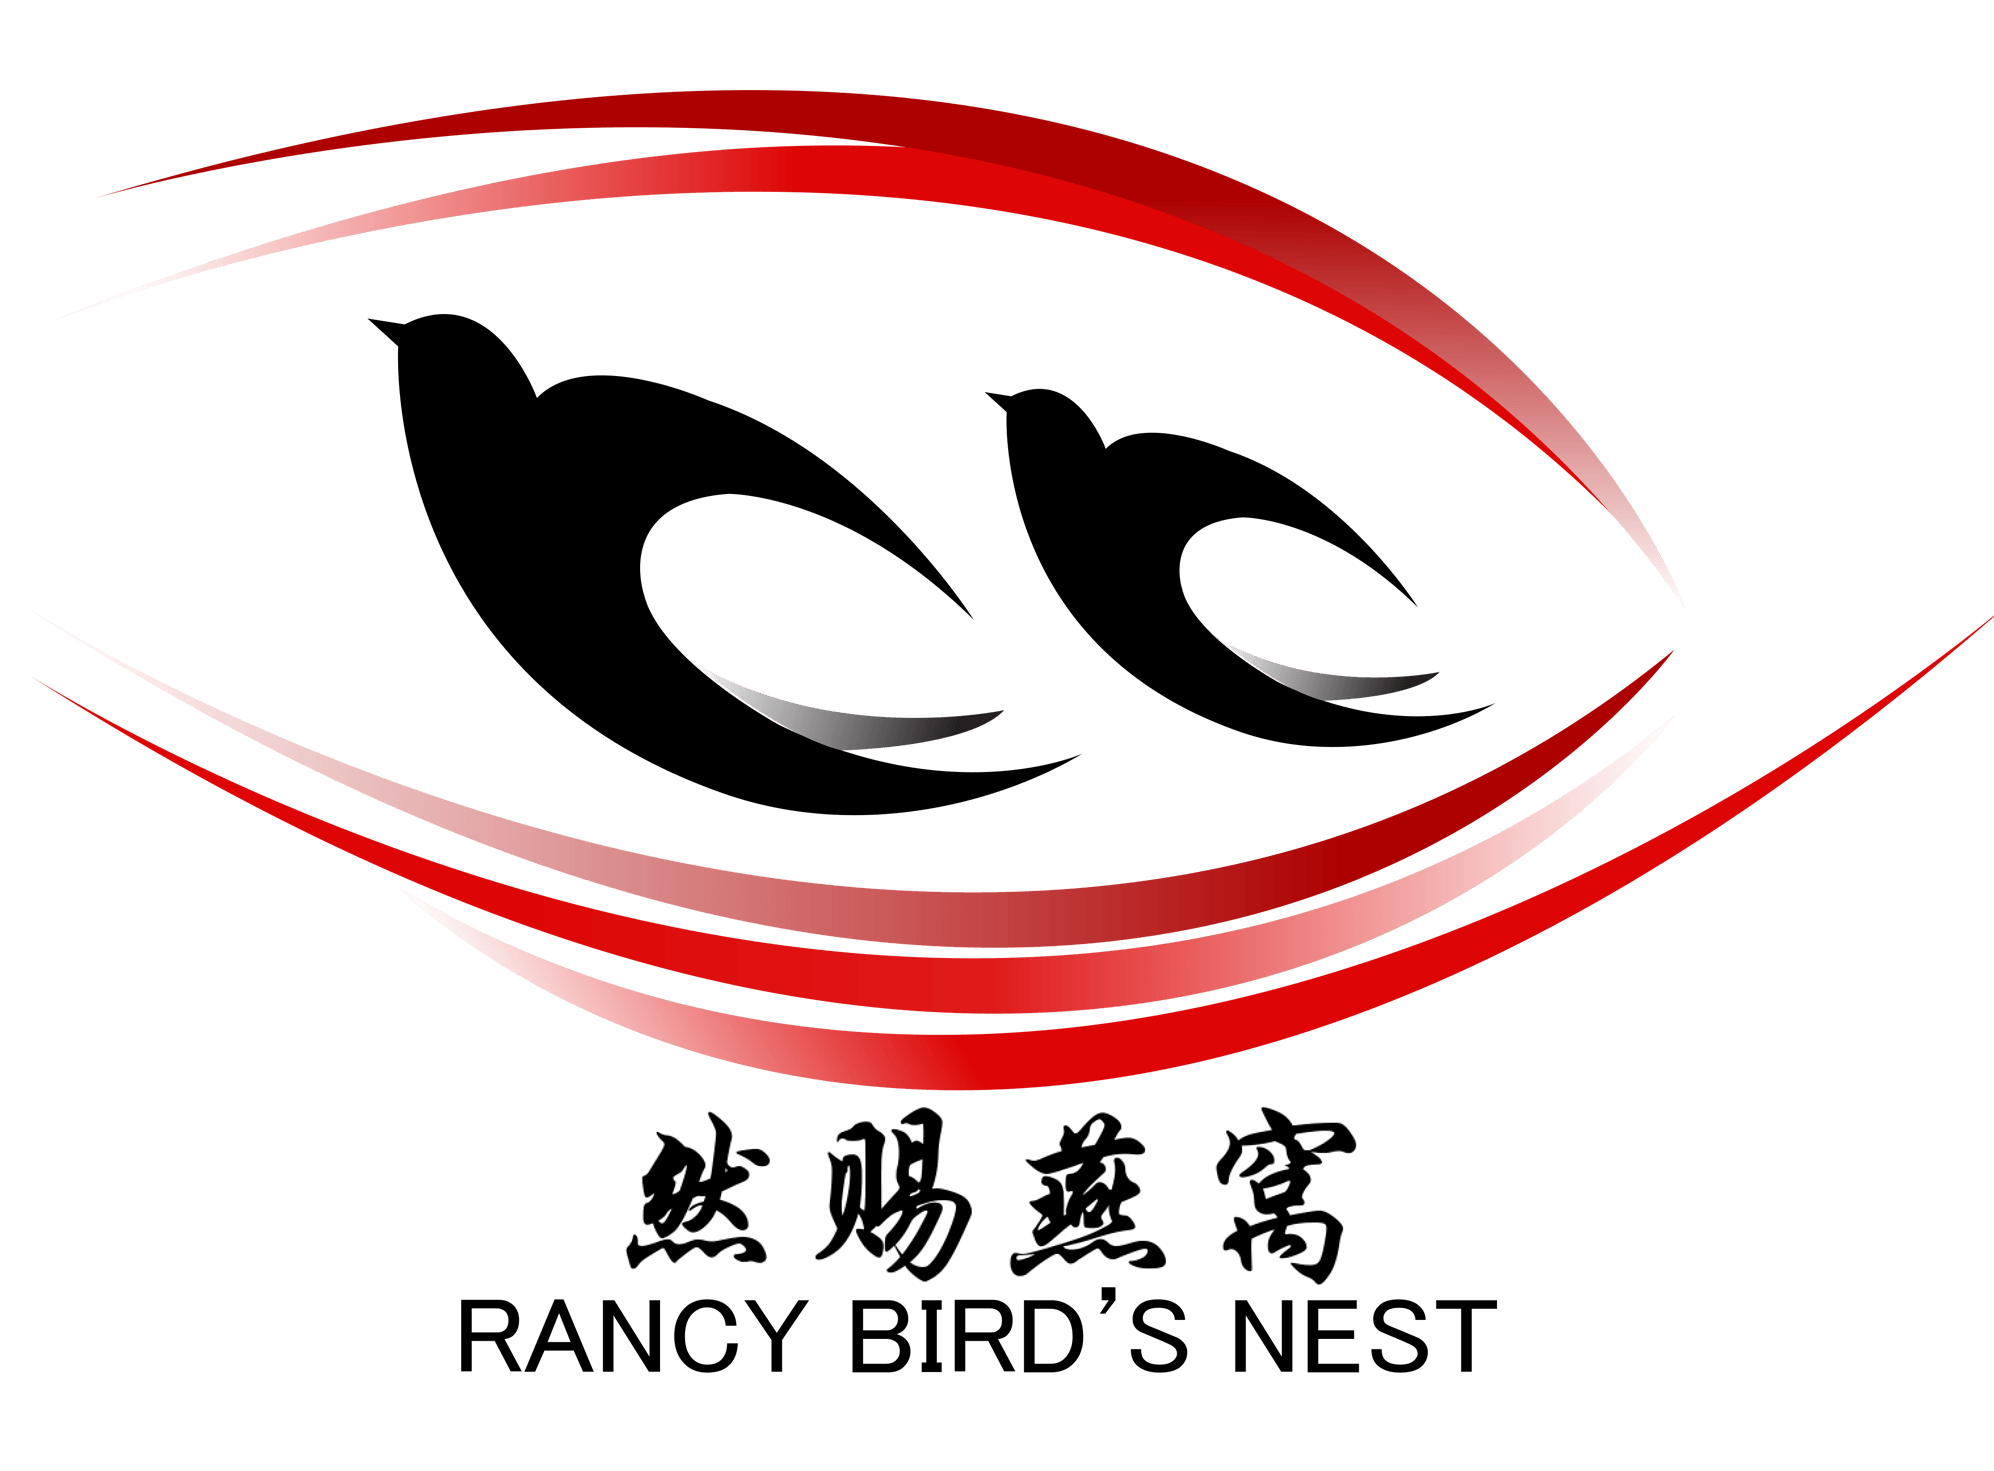 Birds in Nest Logo - Premium Bird Nest. Rancy Bird Nest